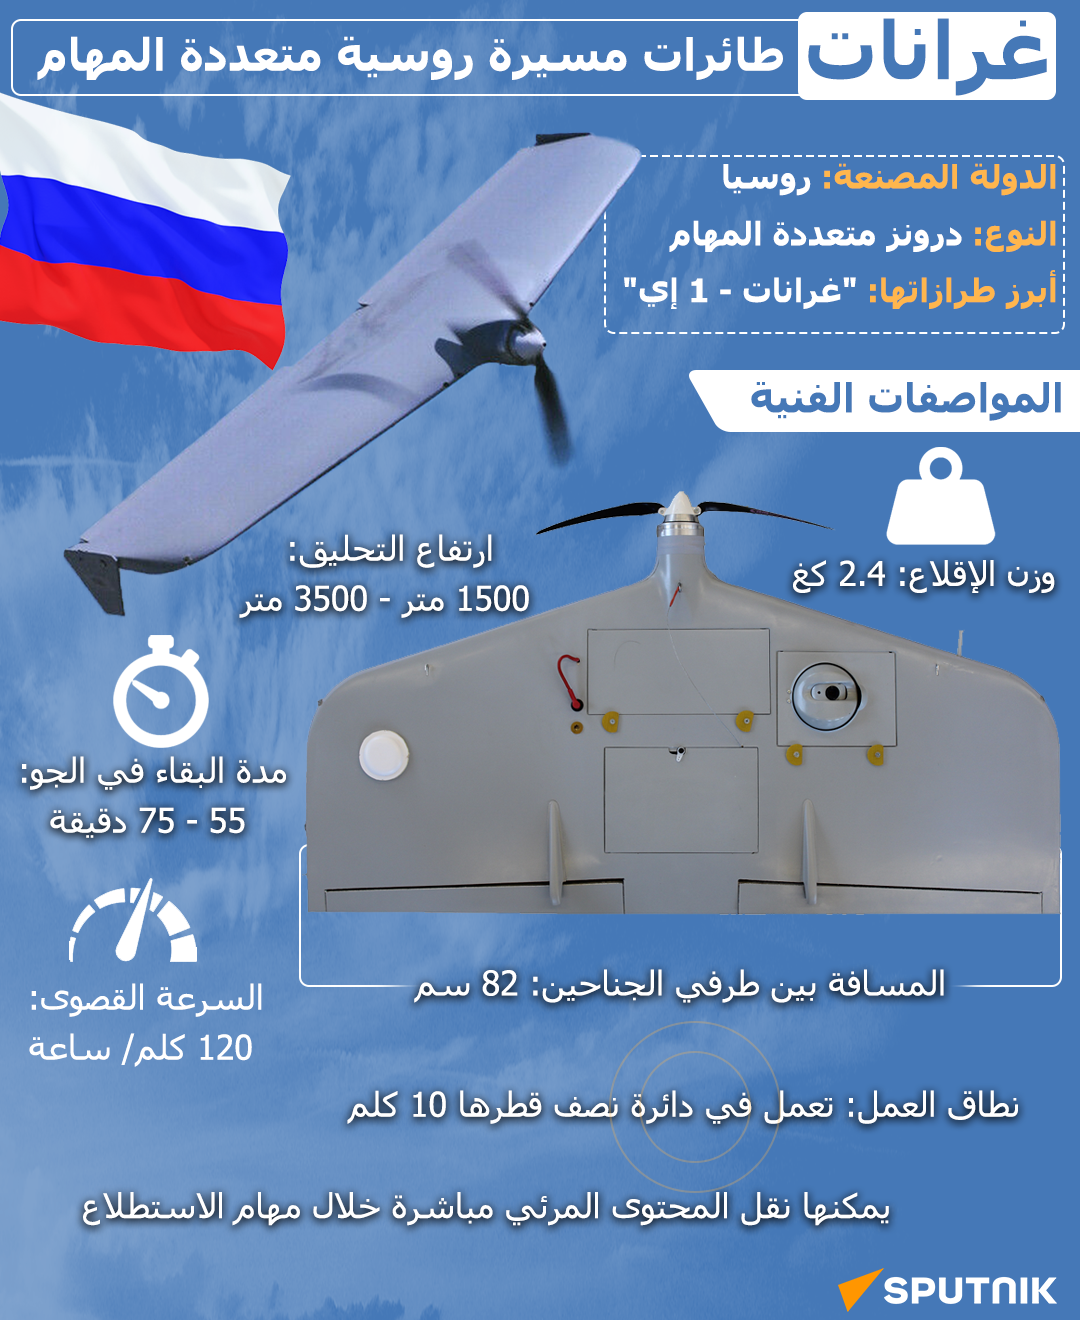 غرانات... طائرات مسيرة روسية متعددة المهام - سبوتنيك عربي